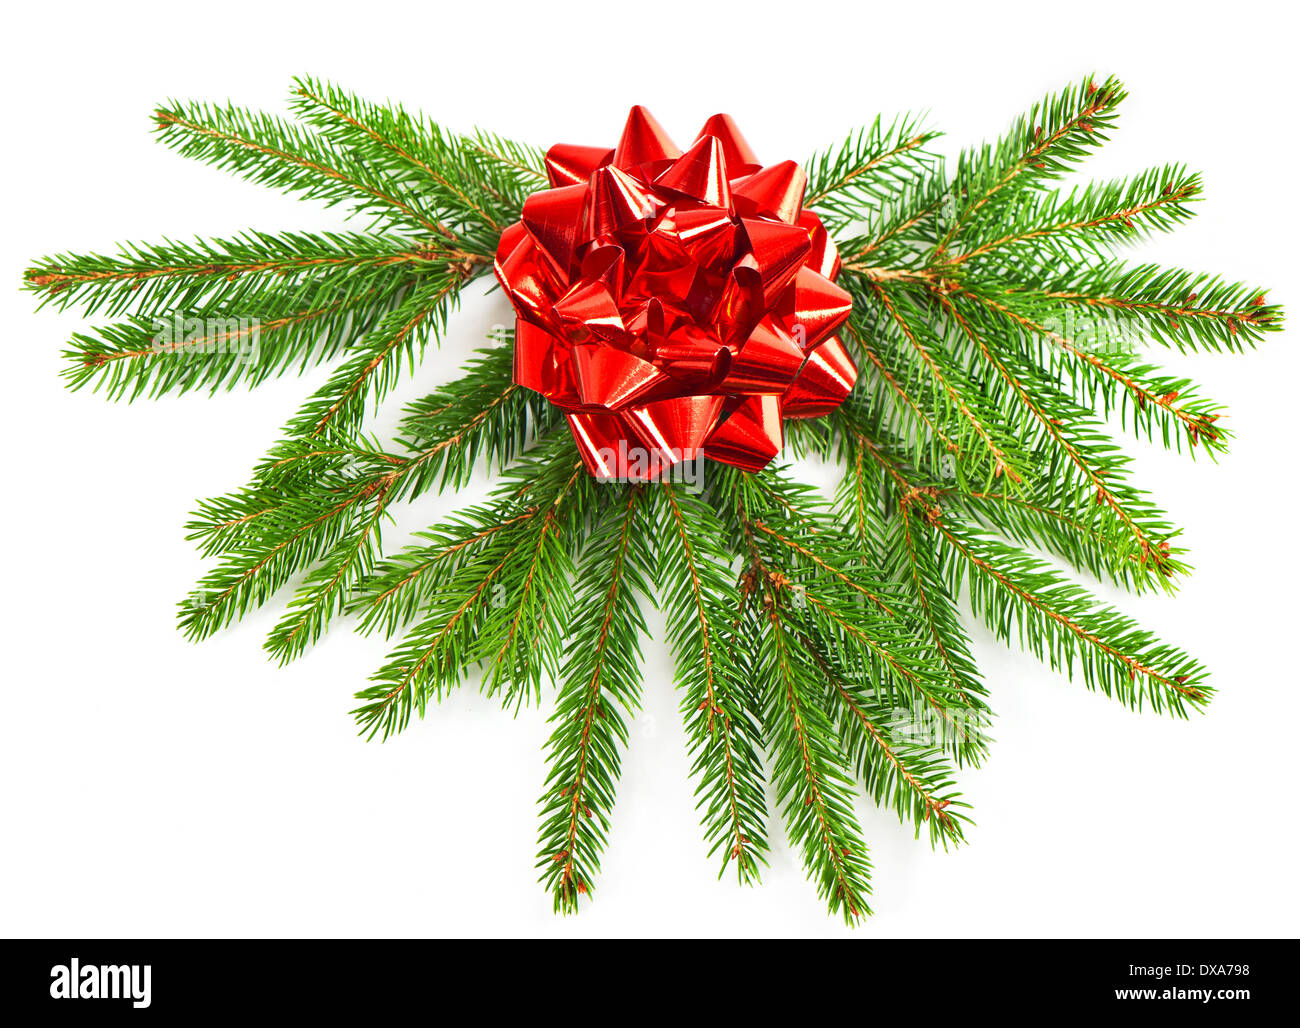 La direction générale de l'arbre de Noël avec décoration de Noël d'un ruban rouge. Banque D'Images